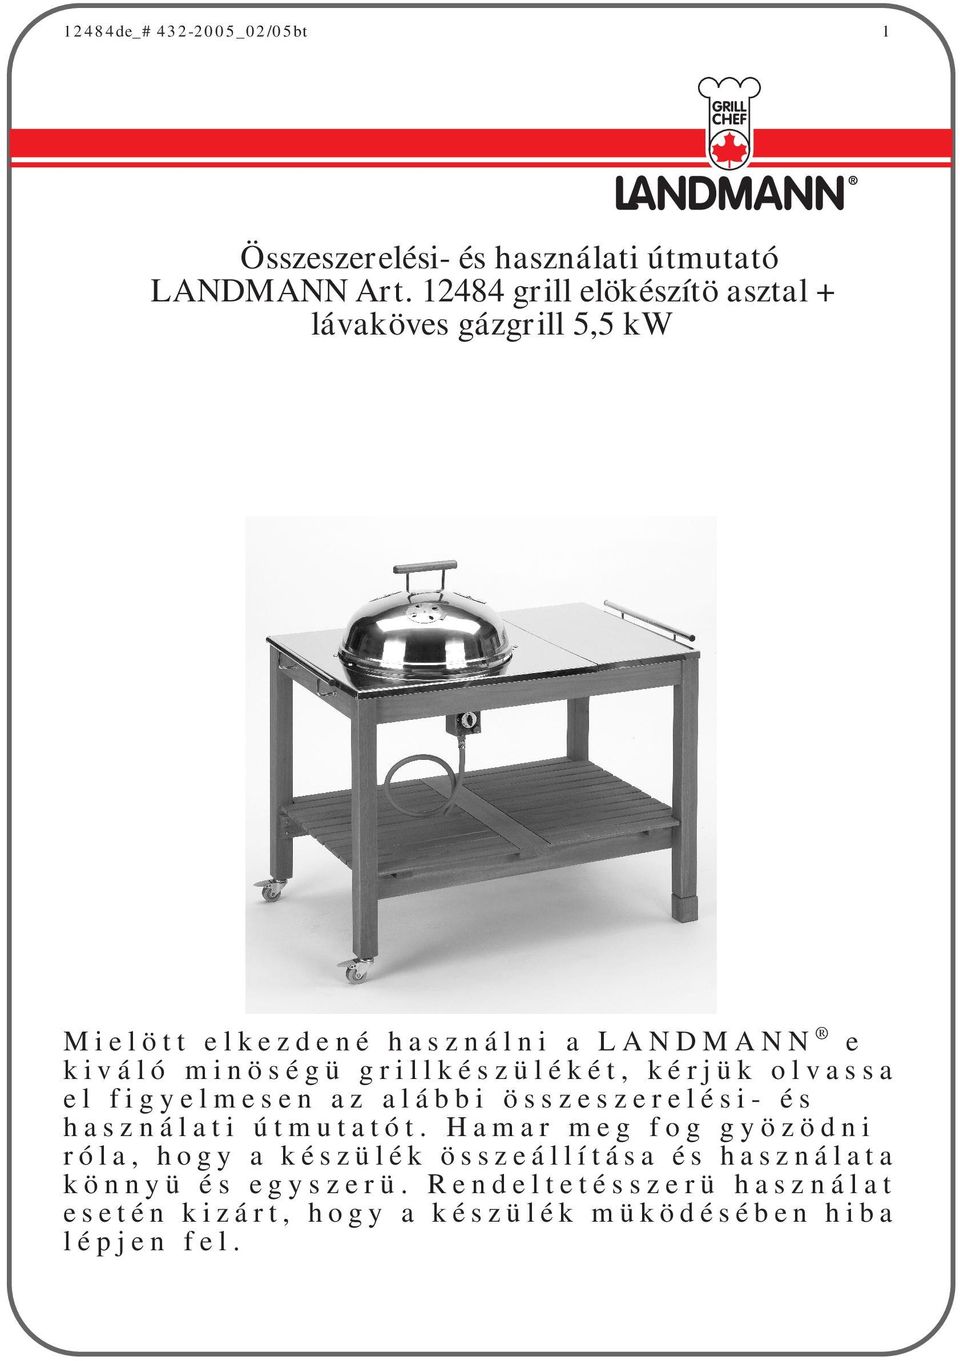 Összeszerelési- és használati útmutató LANDMANN Art grill elökészítö asztal  + lávaköves gázgrill 5,5 kw - PDF Free Download